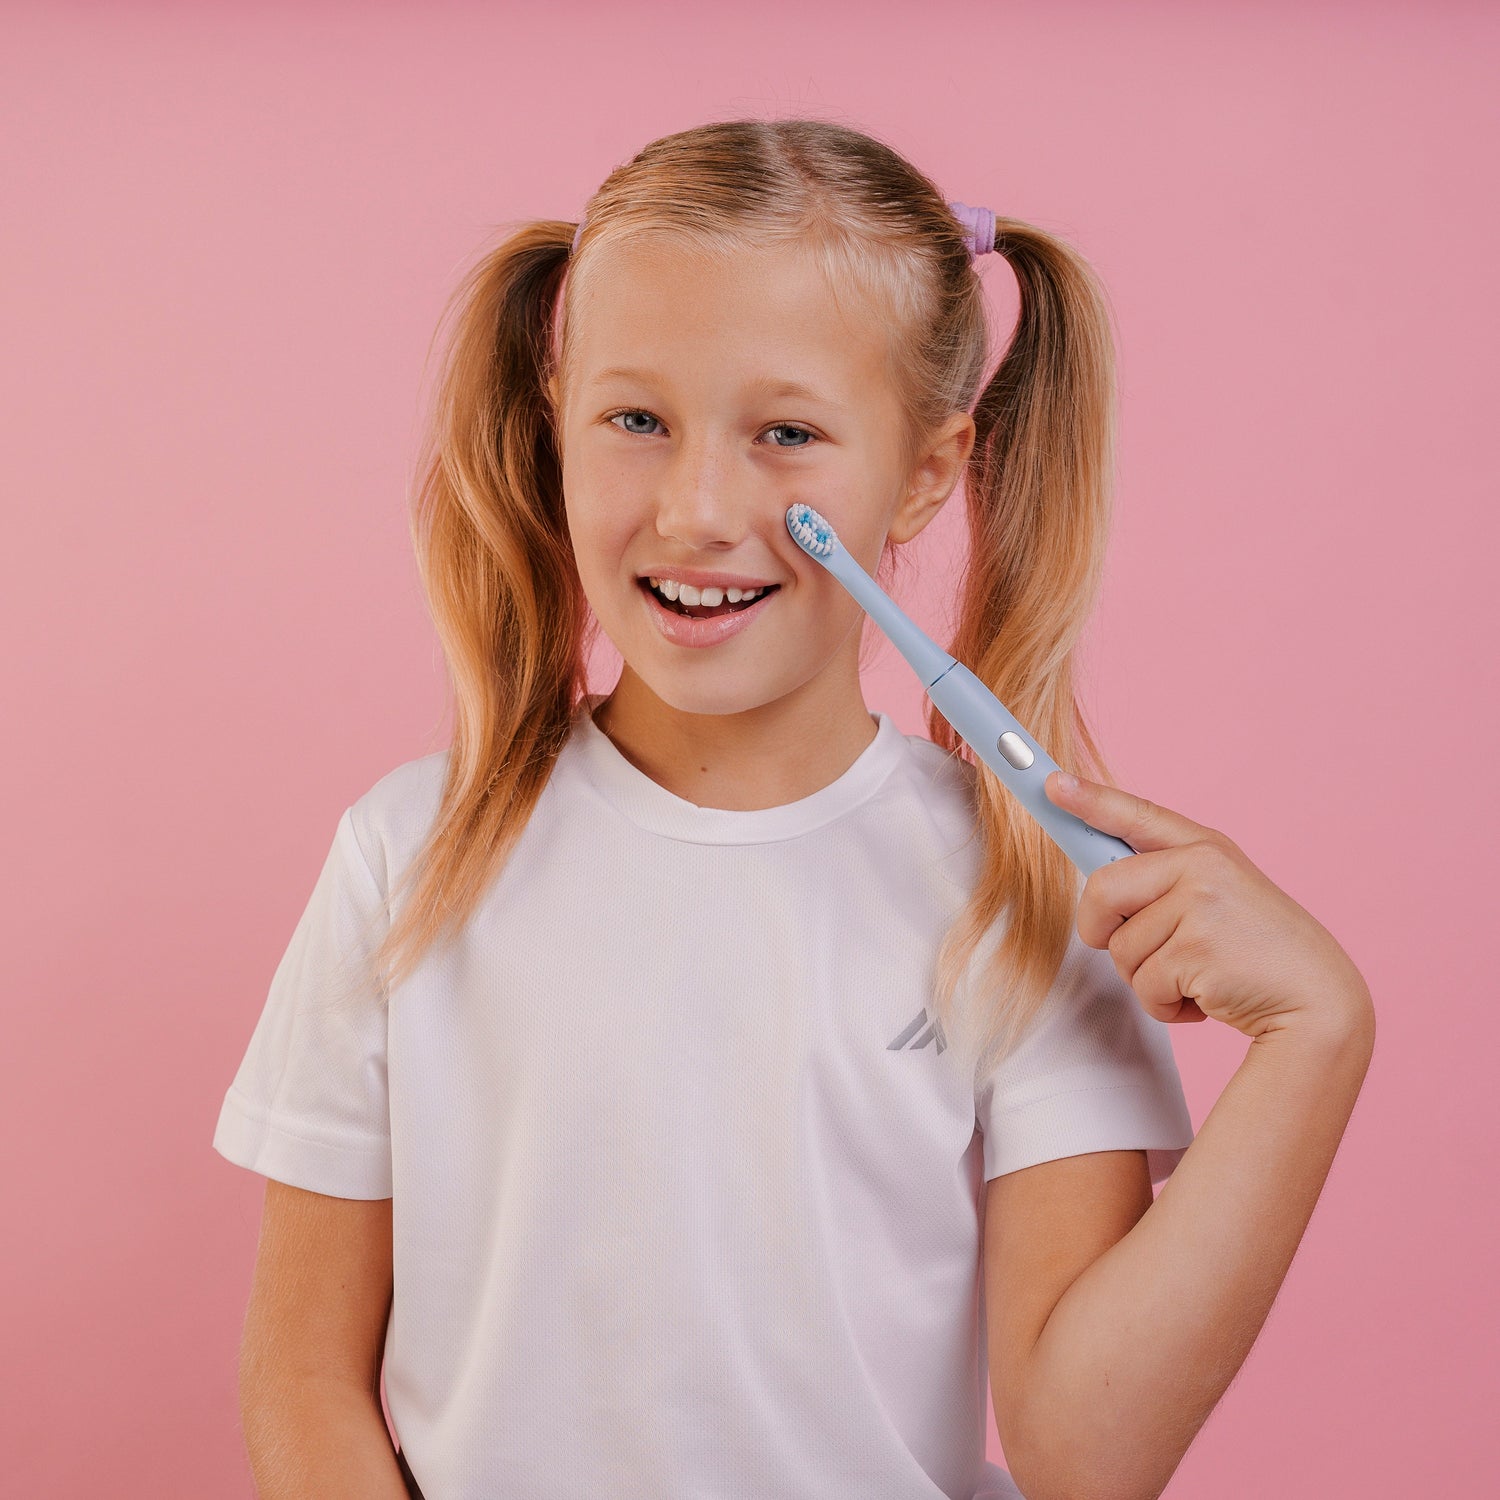 НАБОР детская электрическая зубная щетка Smiley Light синяя купити дитячу електричну зубну щітку купить детскую электрическую зубную щетку купить электрощетку детскую електрична зубна щітка дитяча